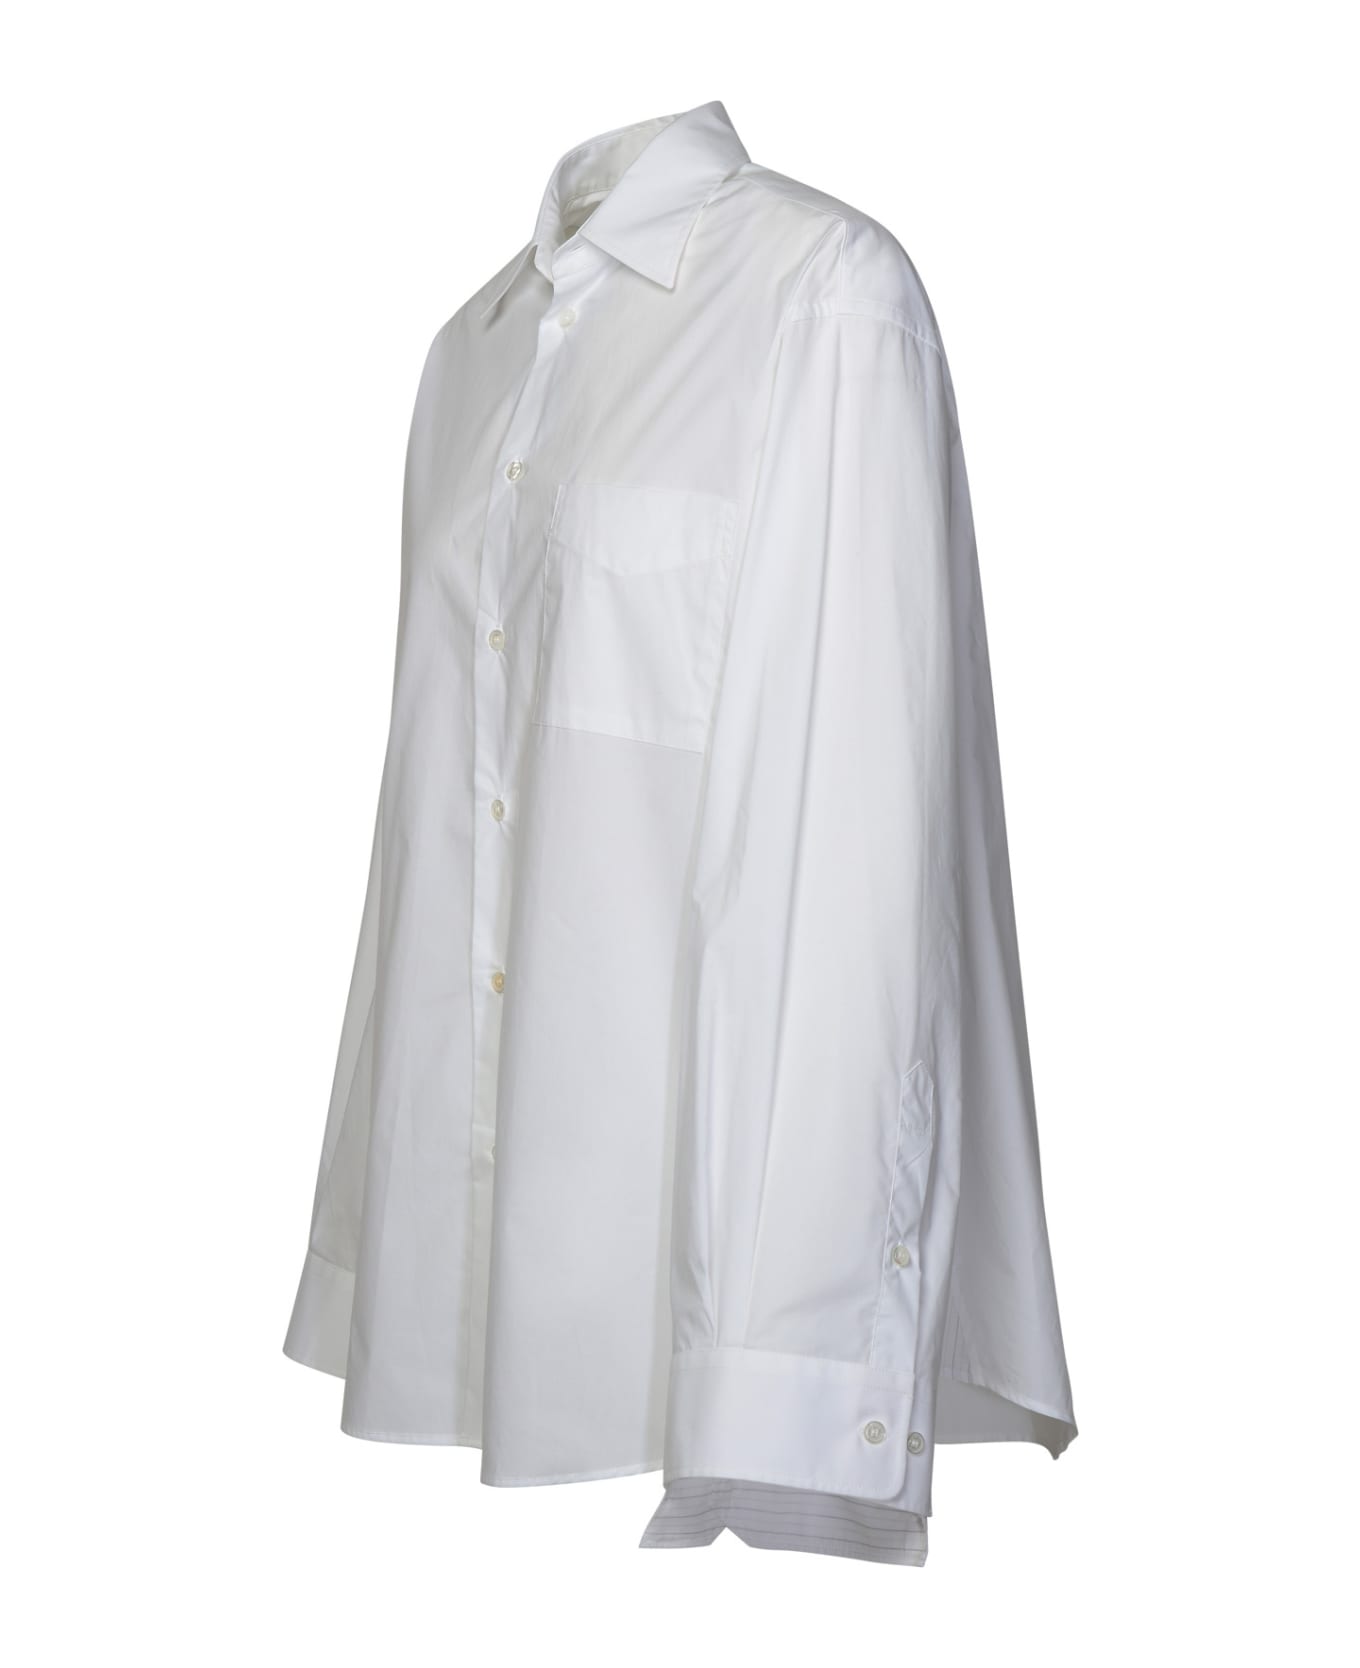 MM6 Maison Margiela White Cotton Shirt - White シャツ